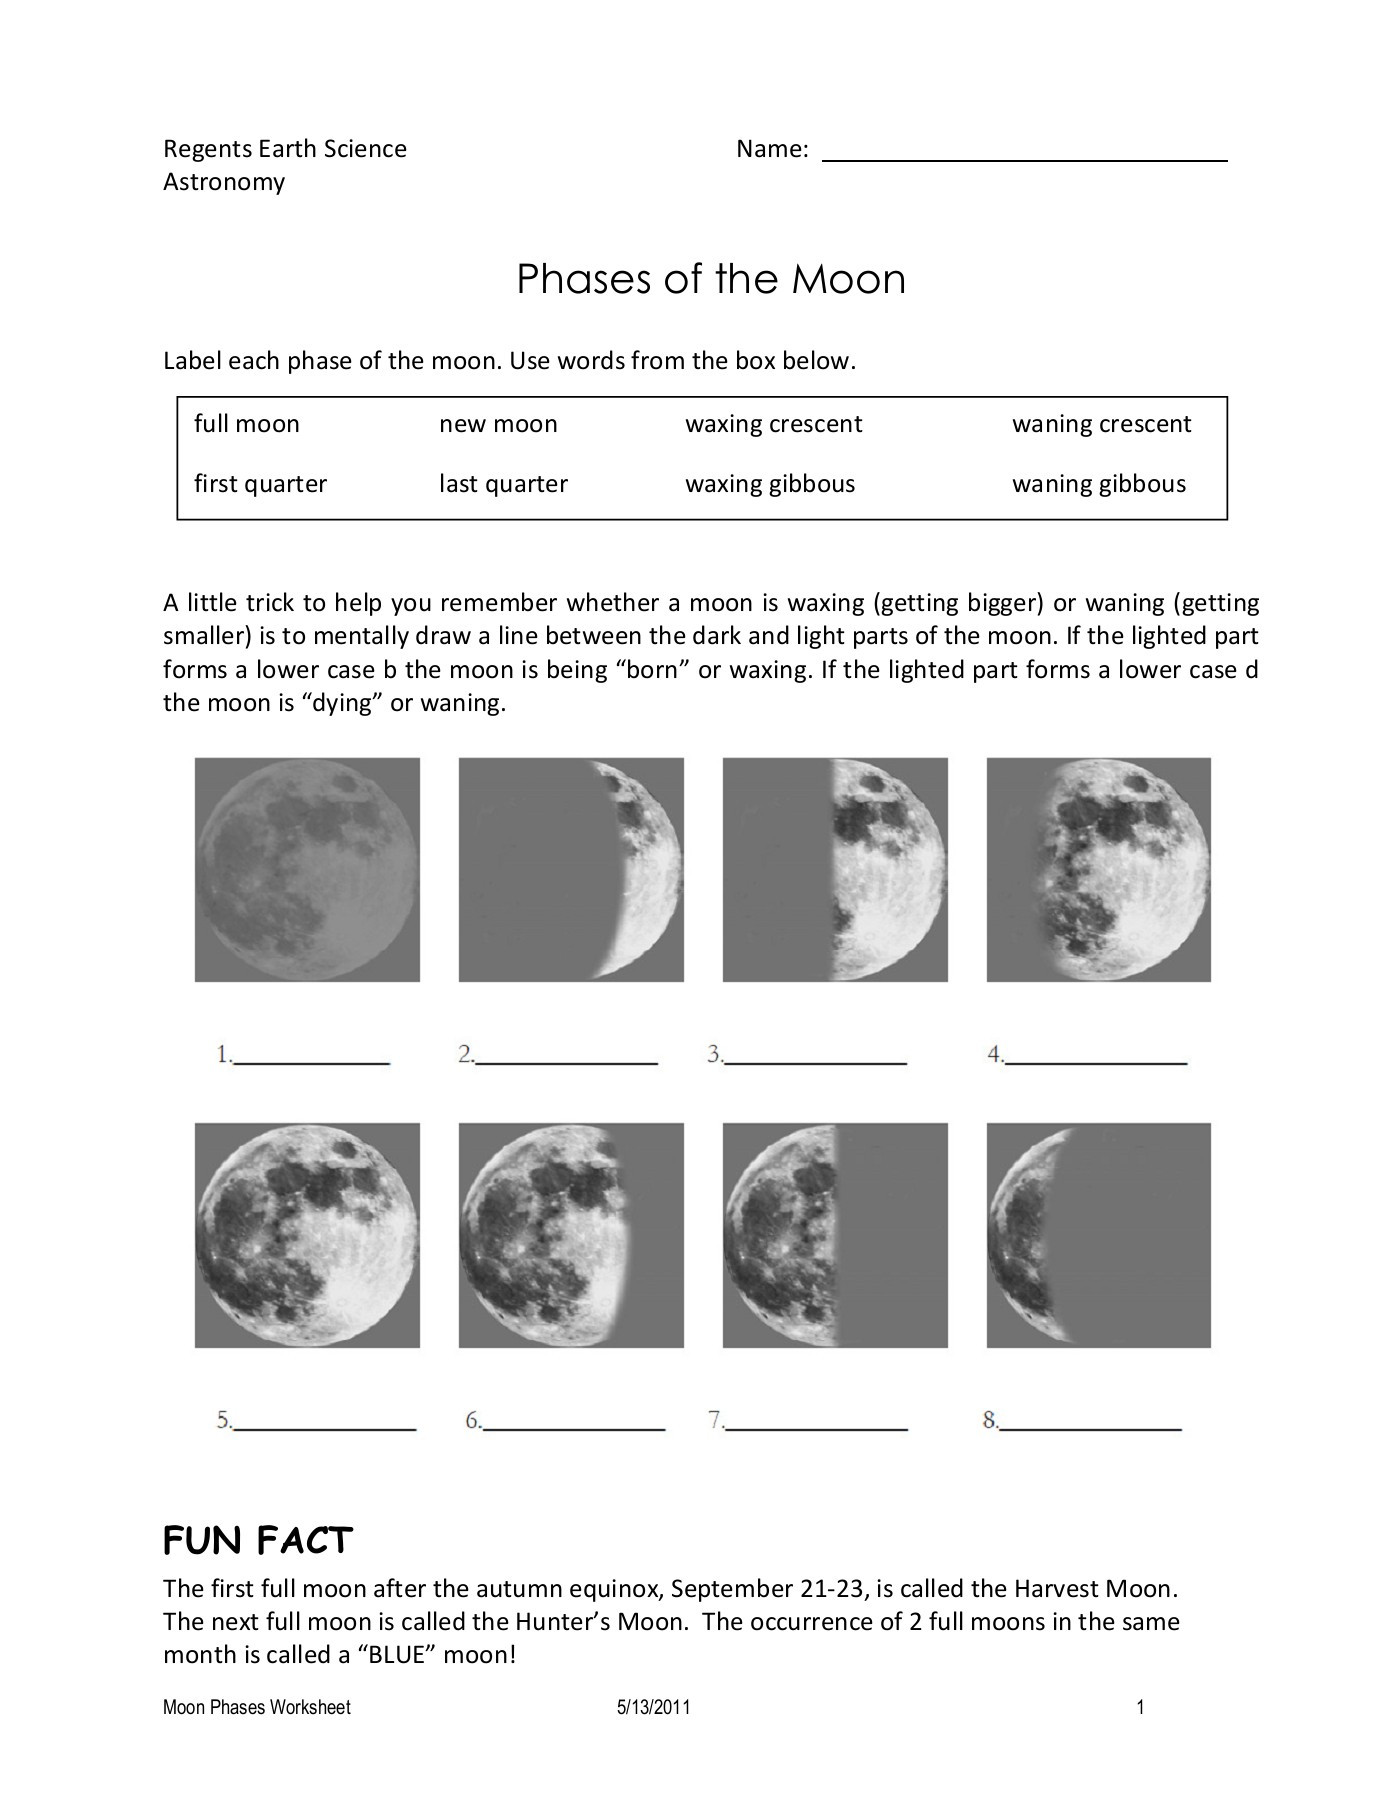 Moon Phases Worksheet Pdf Moon Phases Worksheet